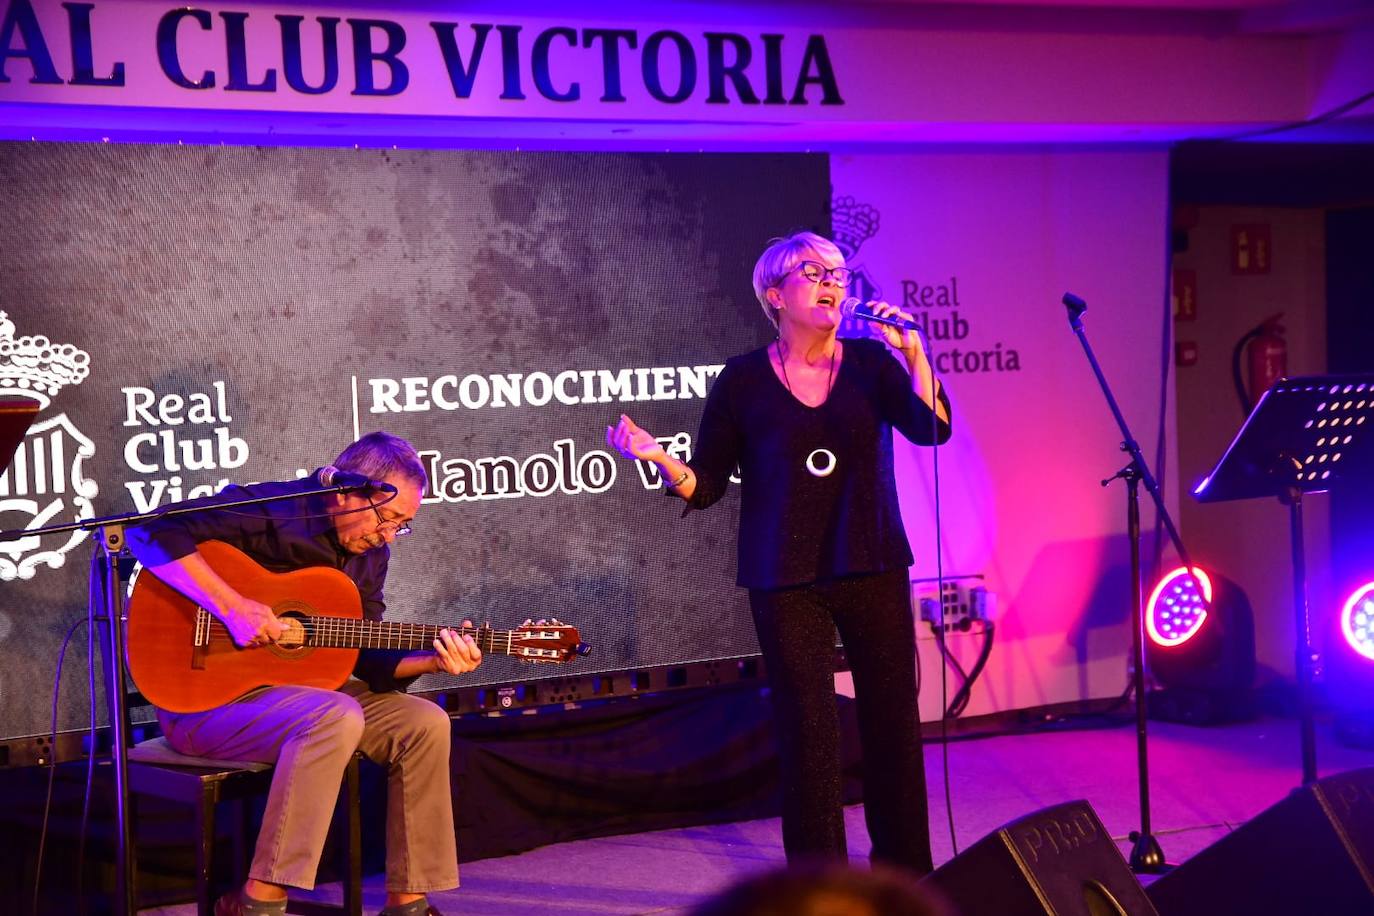 Fotos: El Real Club Victoria rinde homenaje a Manolo Vieira